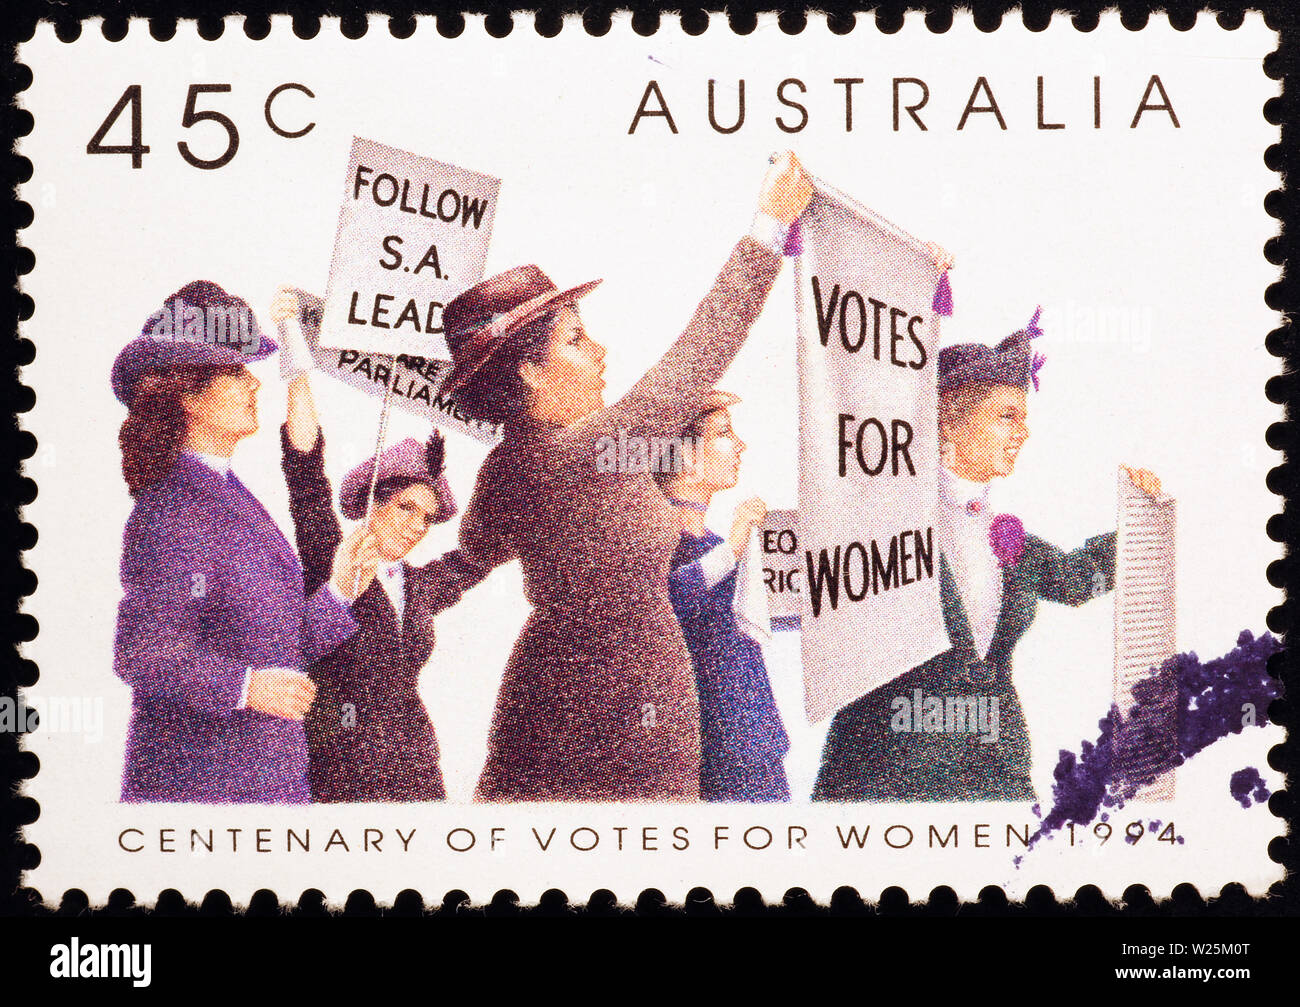 Centenary of votes for women on australian stamp Stock Photo